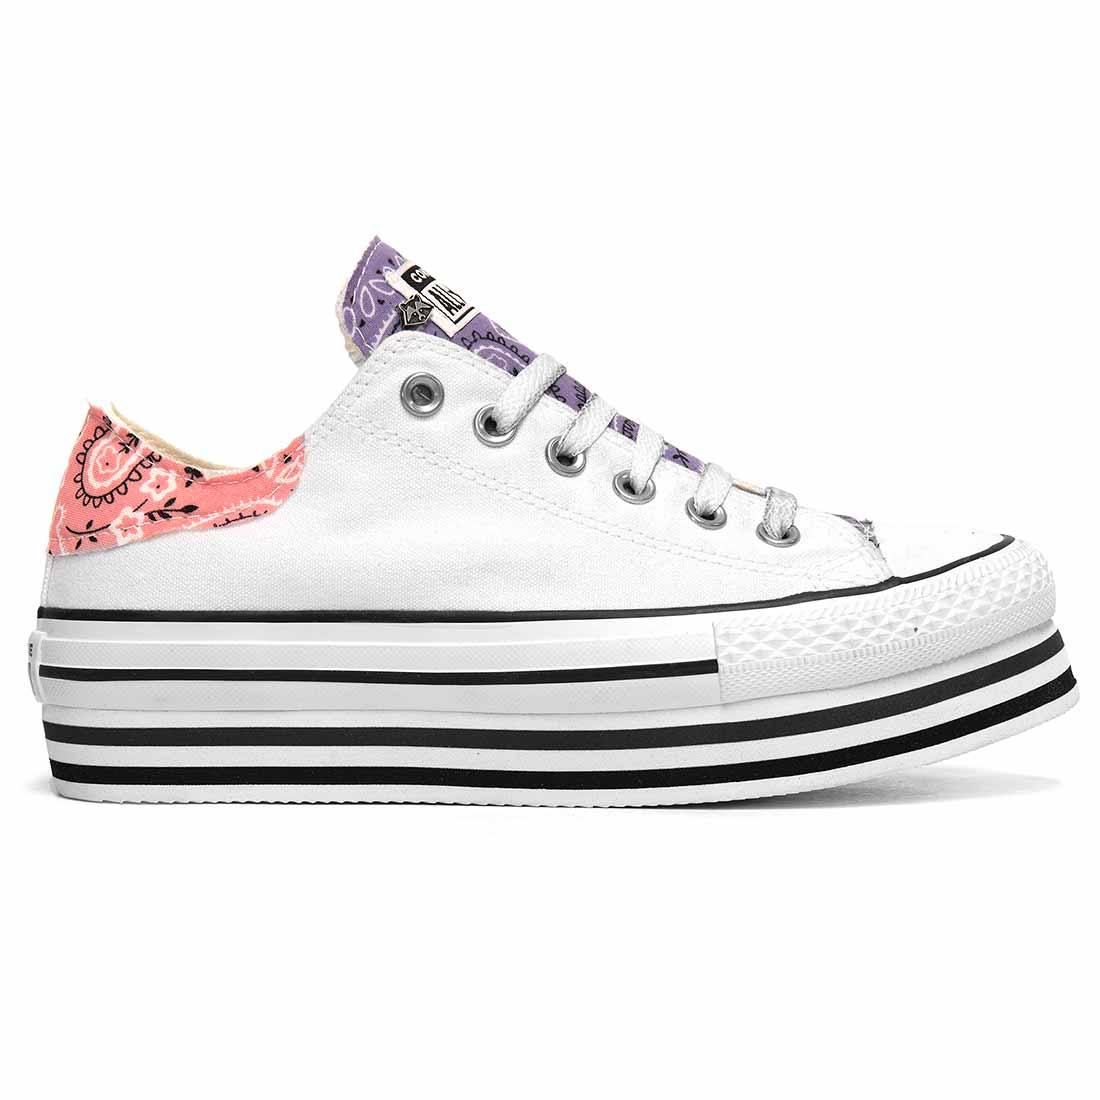 sneakers converse all star con bandana viola e rosa con suola alta layer colore bianche 